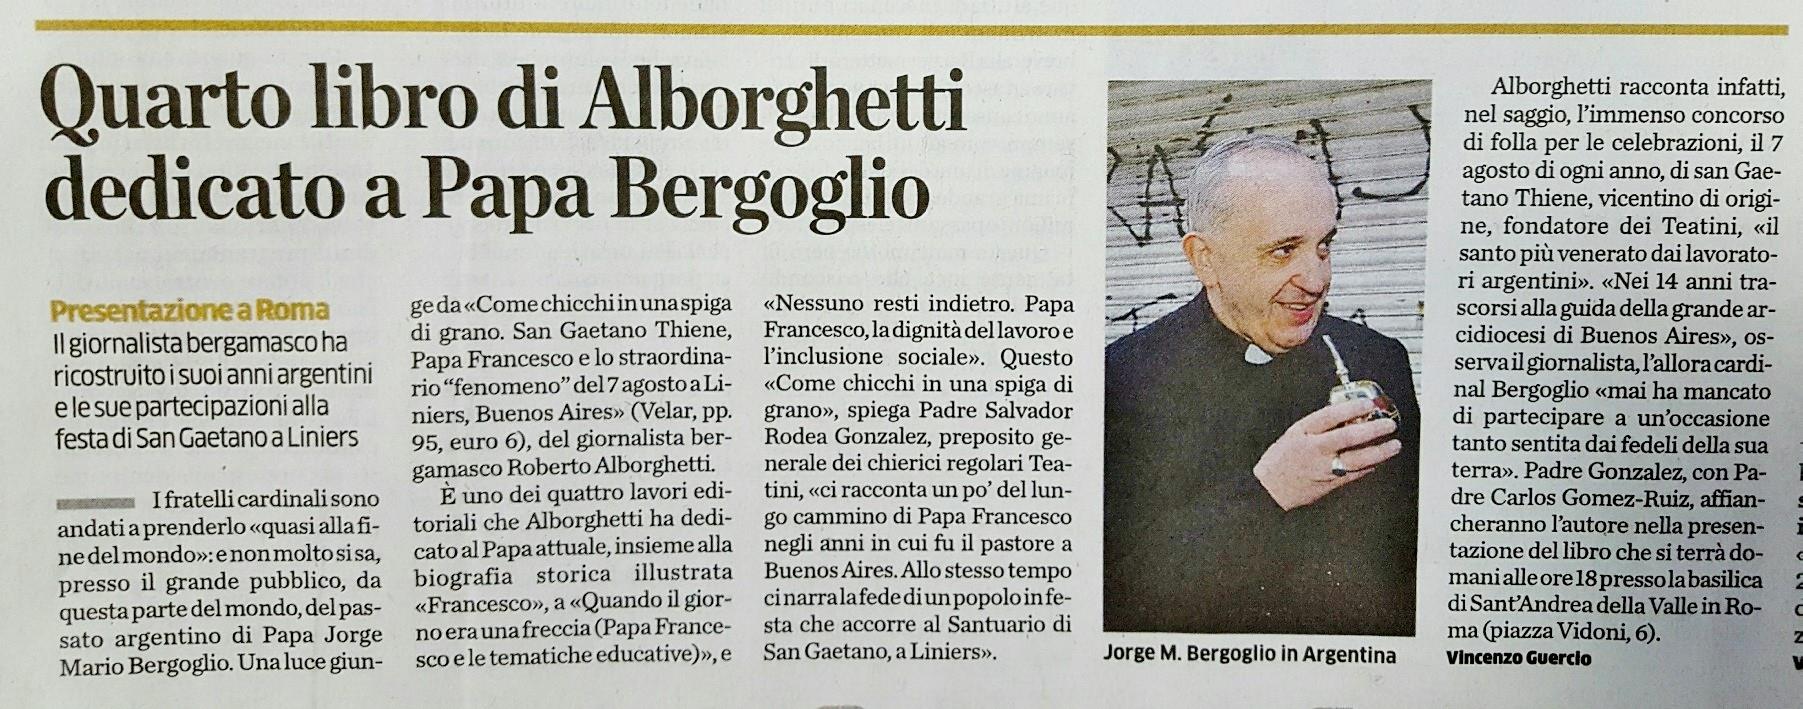 Articolo L'Eco di Bergamo 12/01/2017